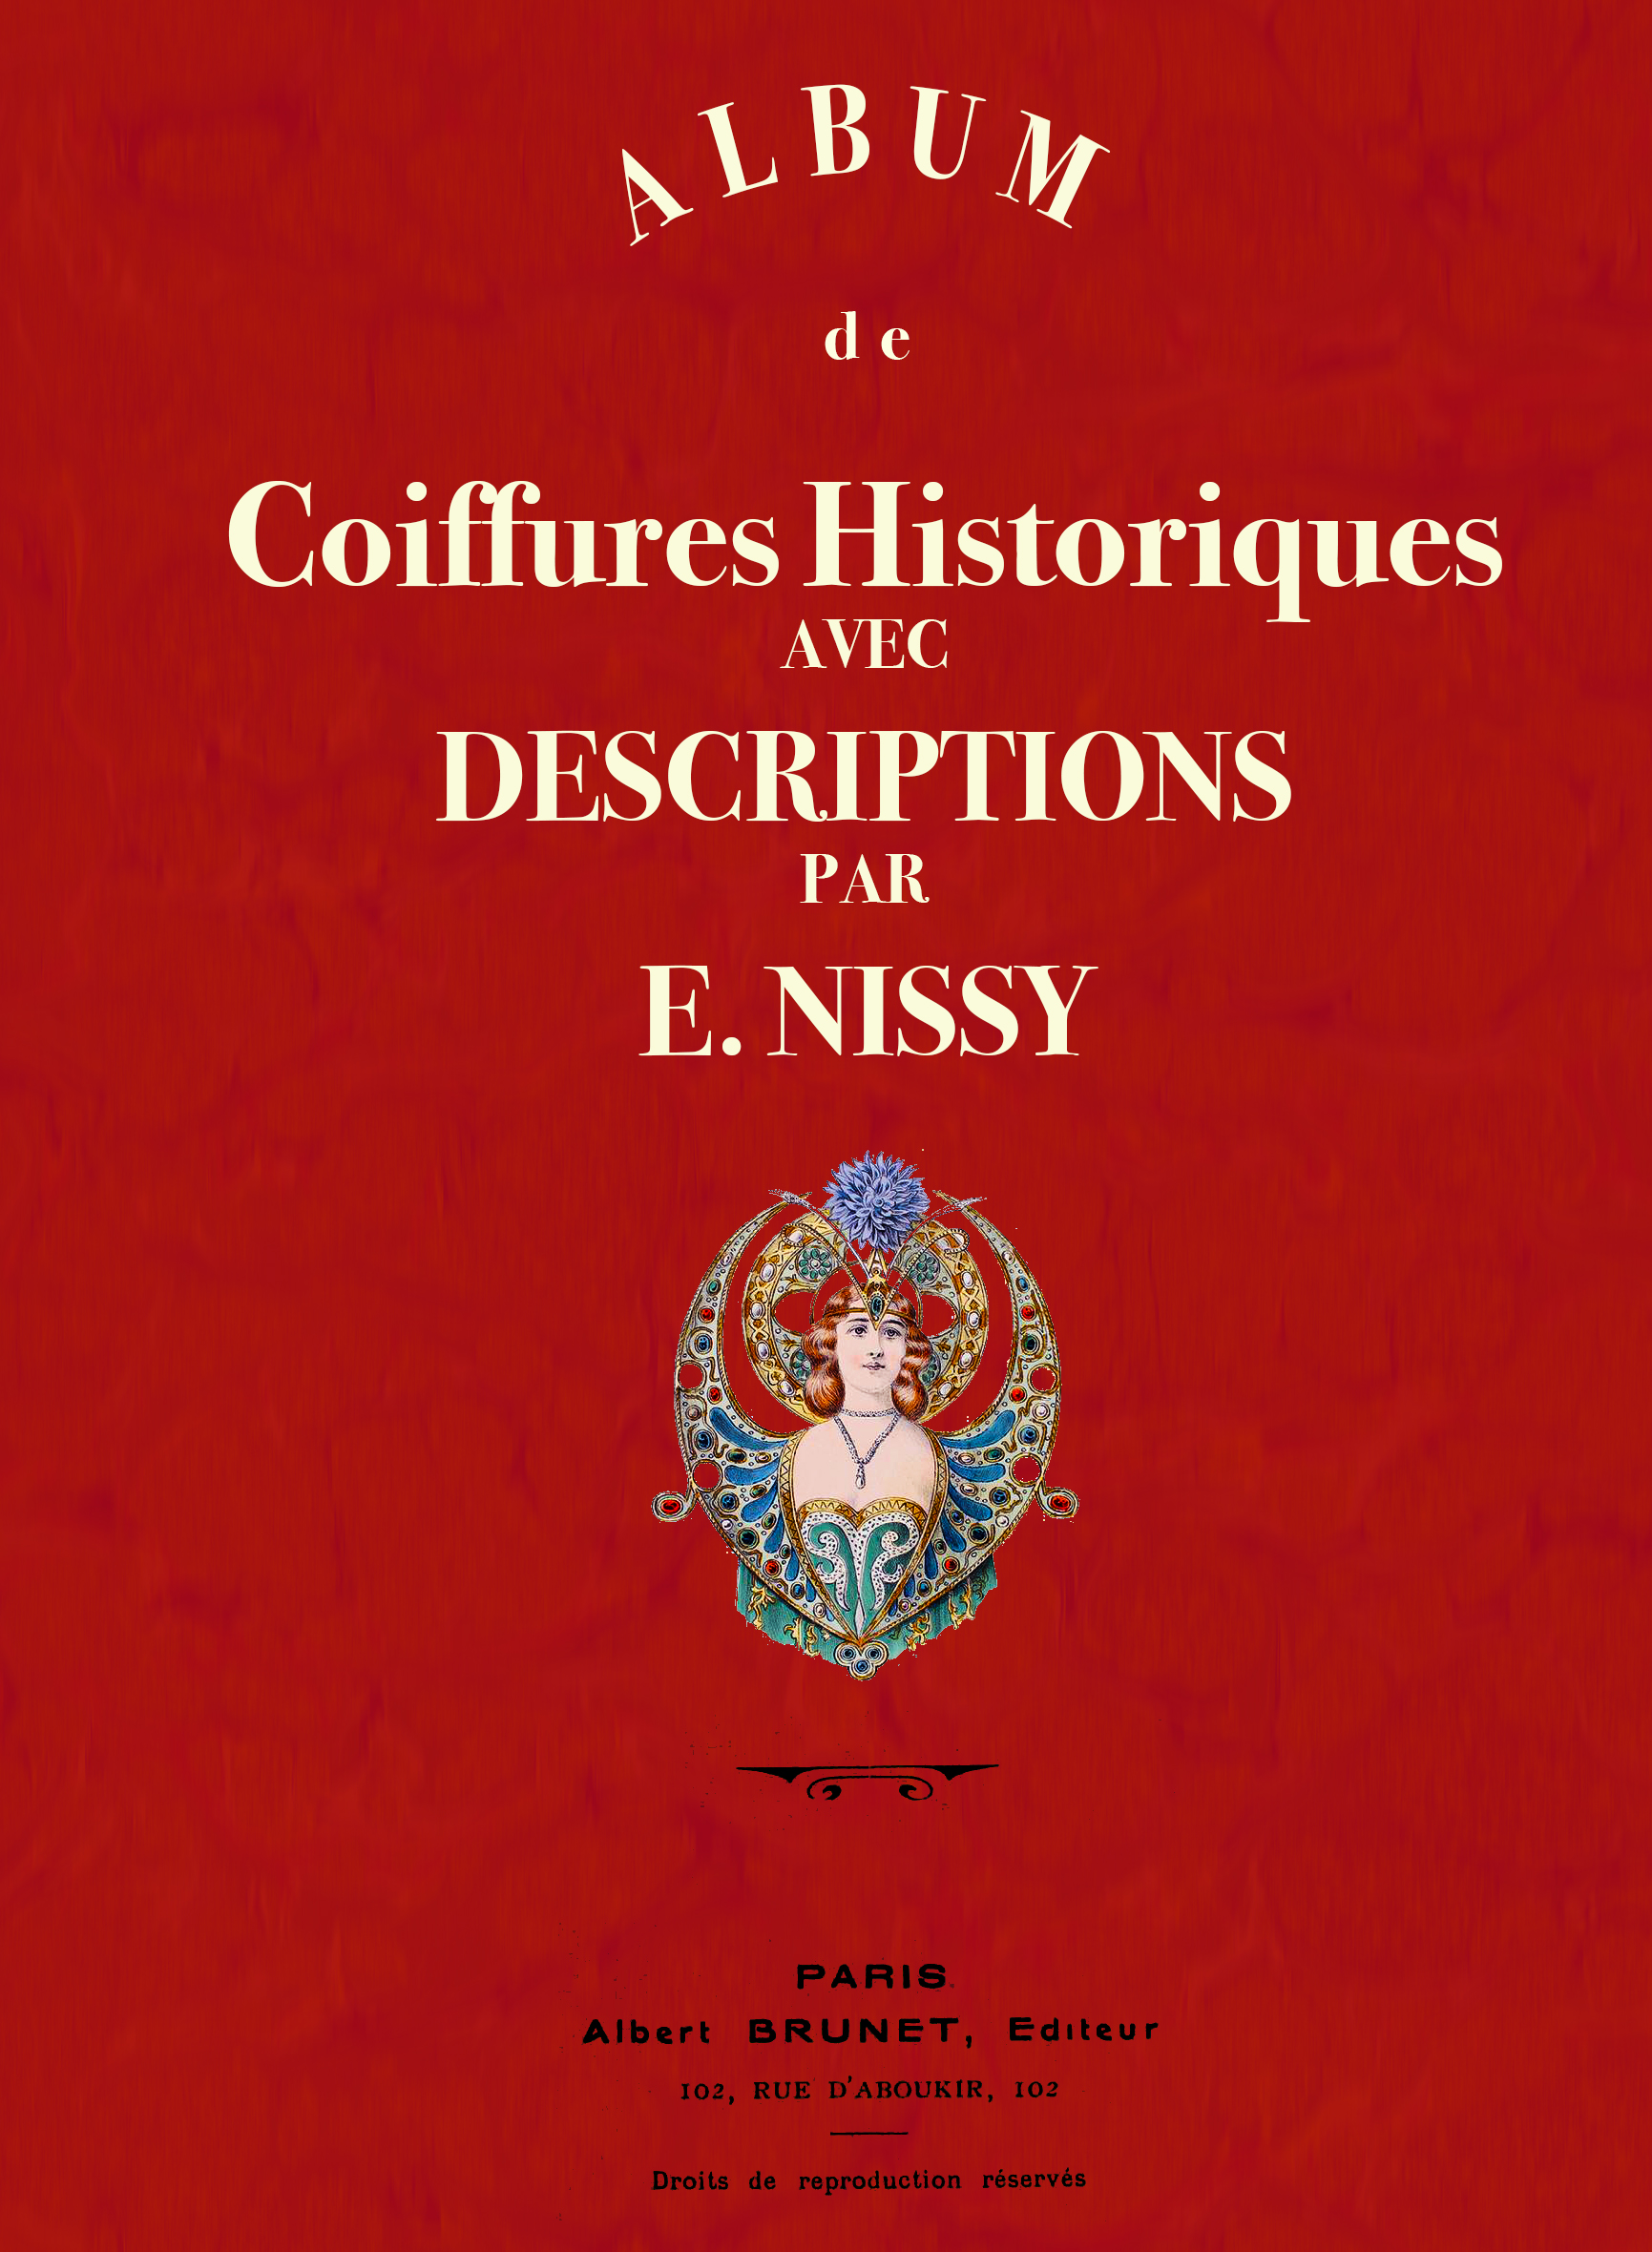 Albums, coiffures, historiques, E. Nissy, Albert Brunet, Paris